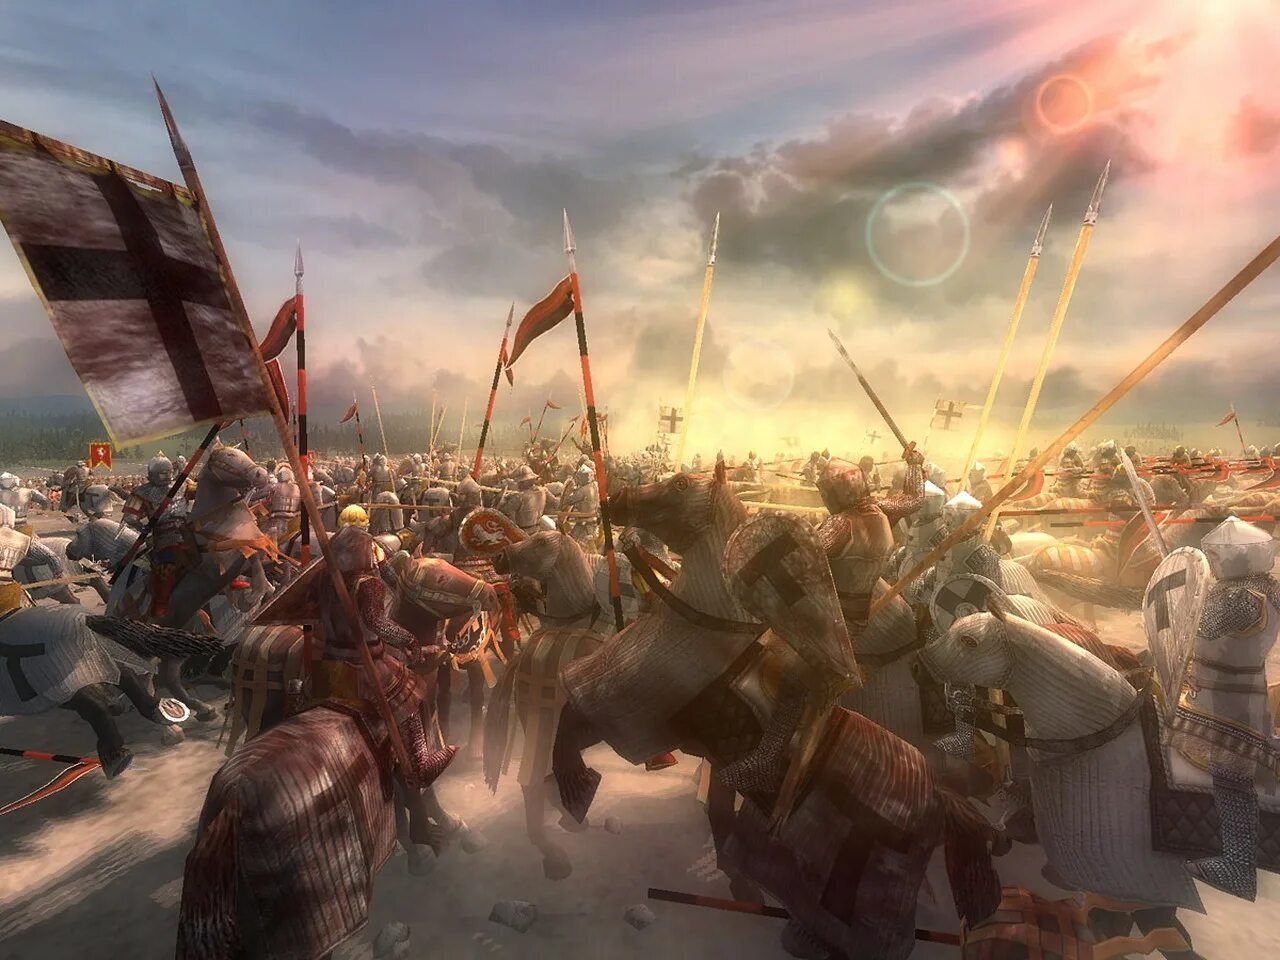 Какая битва произошла в 1242. Битва Ледовое побоище 1242.